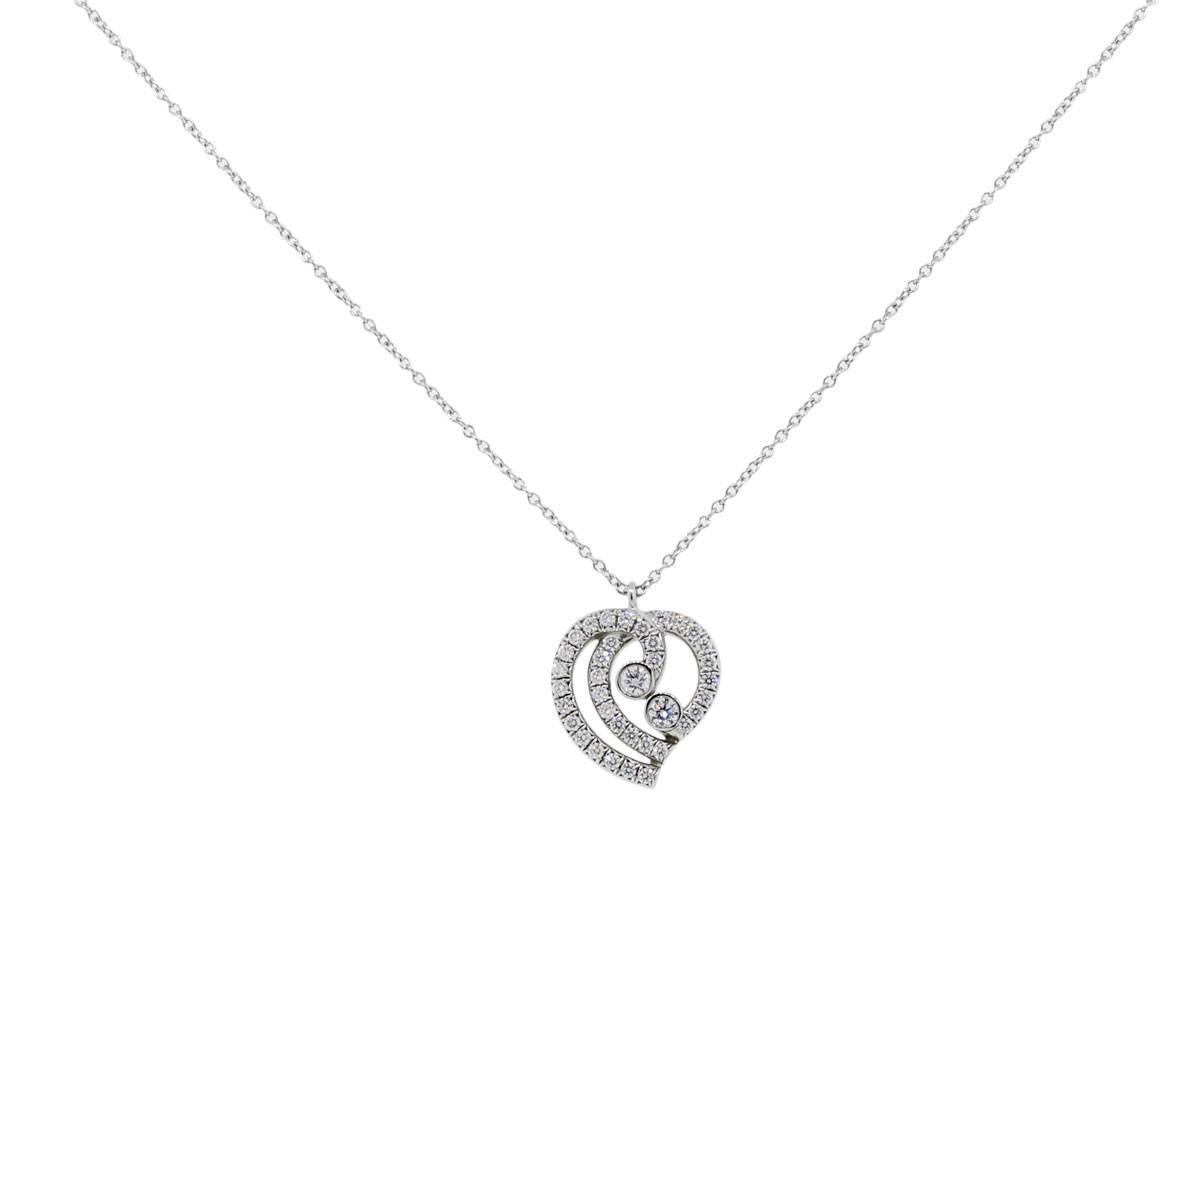 Style : Tiffany & Co. Collier avec pendentif en forme de cœur en platine et diamant
Longueur : Le collier est d'une longueur de 16